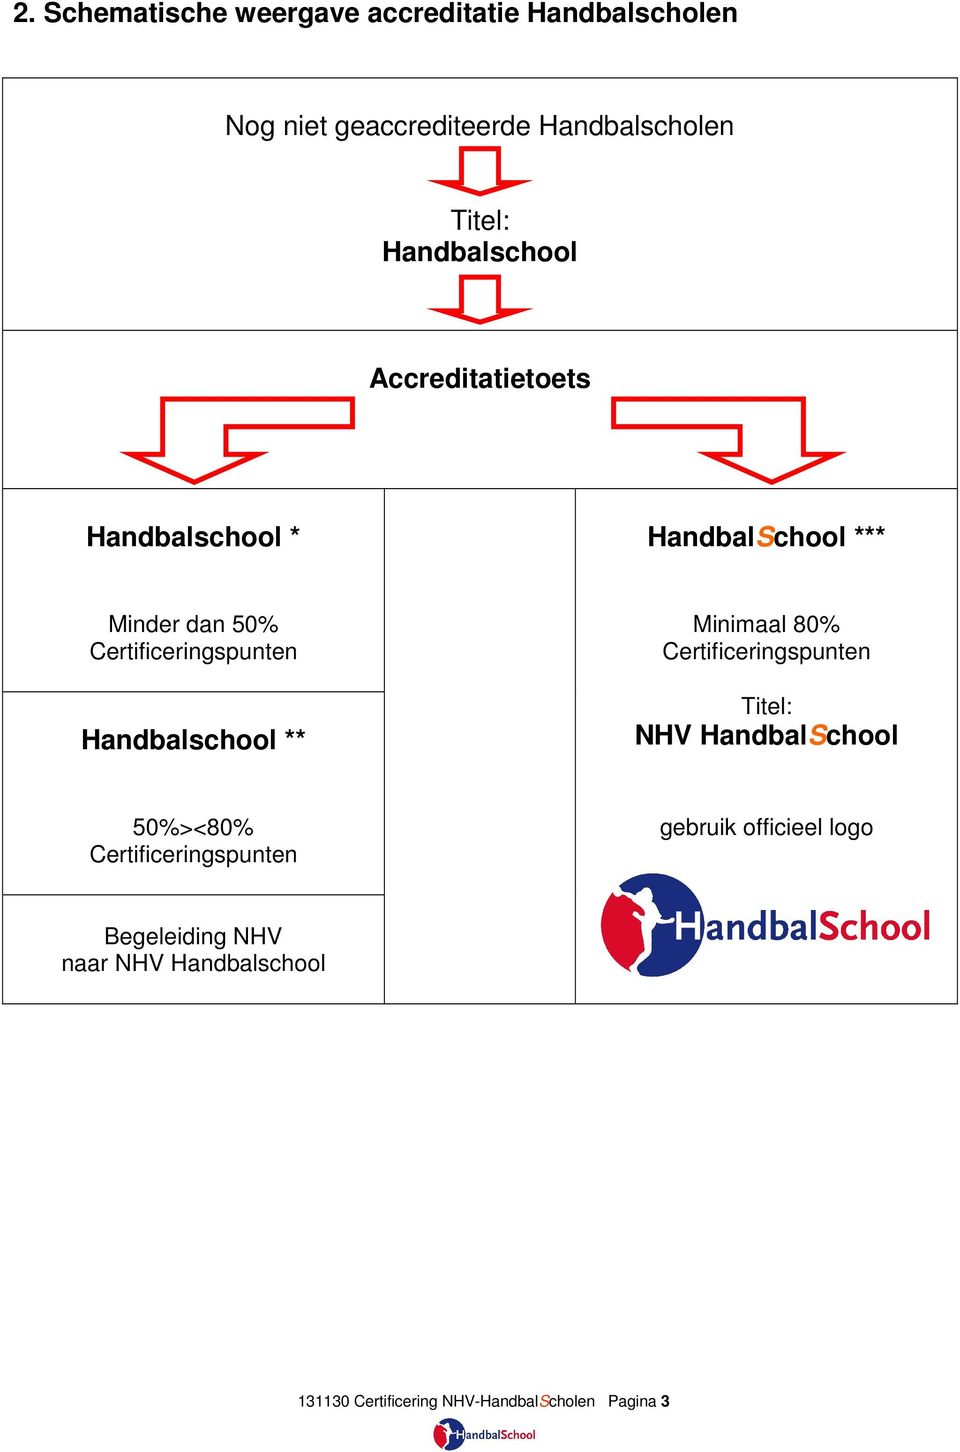 Handbalschool ** Minimaal 80% Certificeringspunten Titel: NHV HandbalSchool 50%><80%